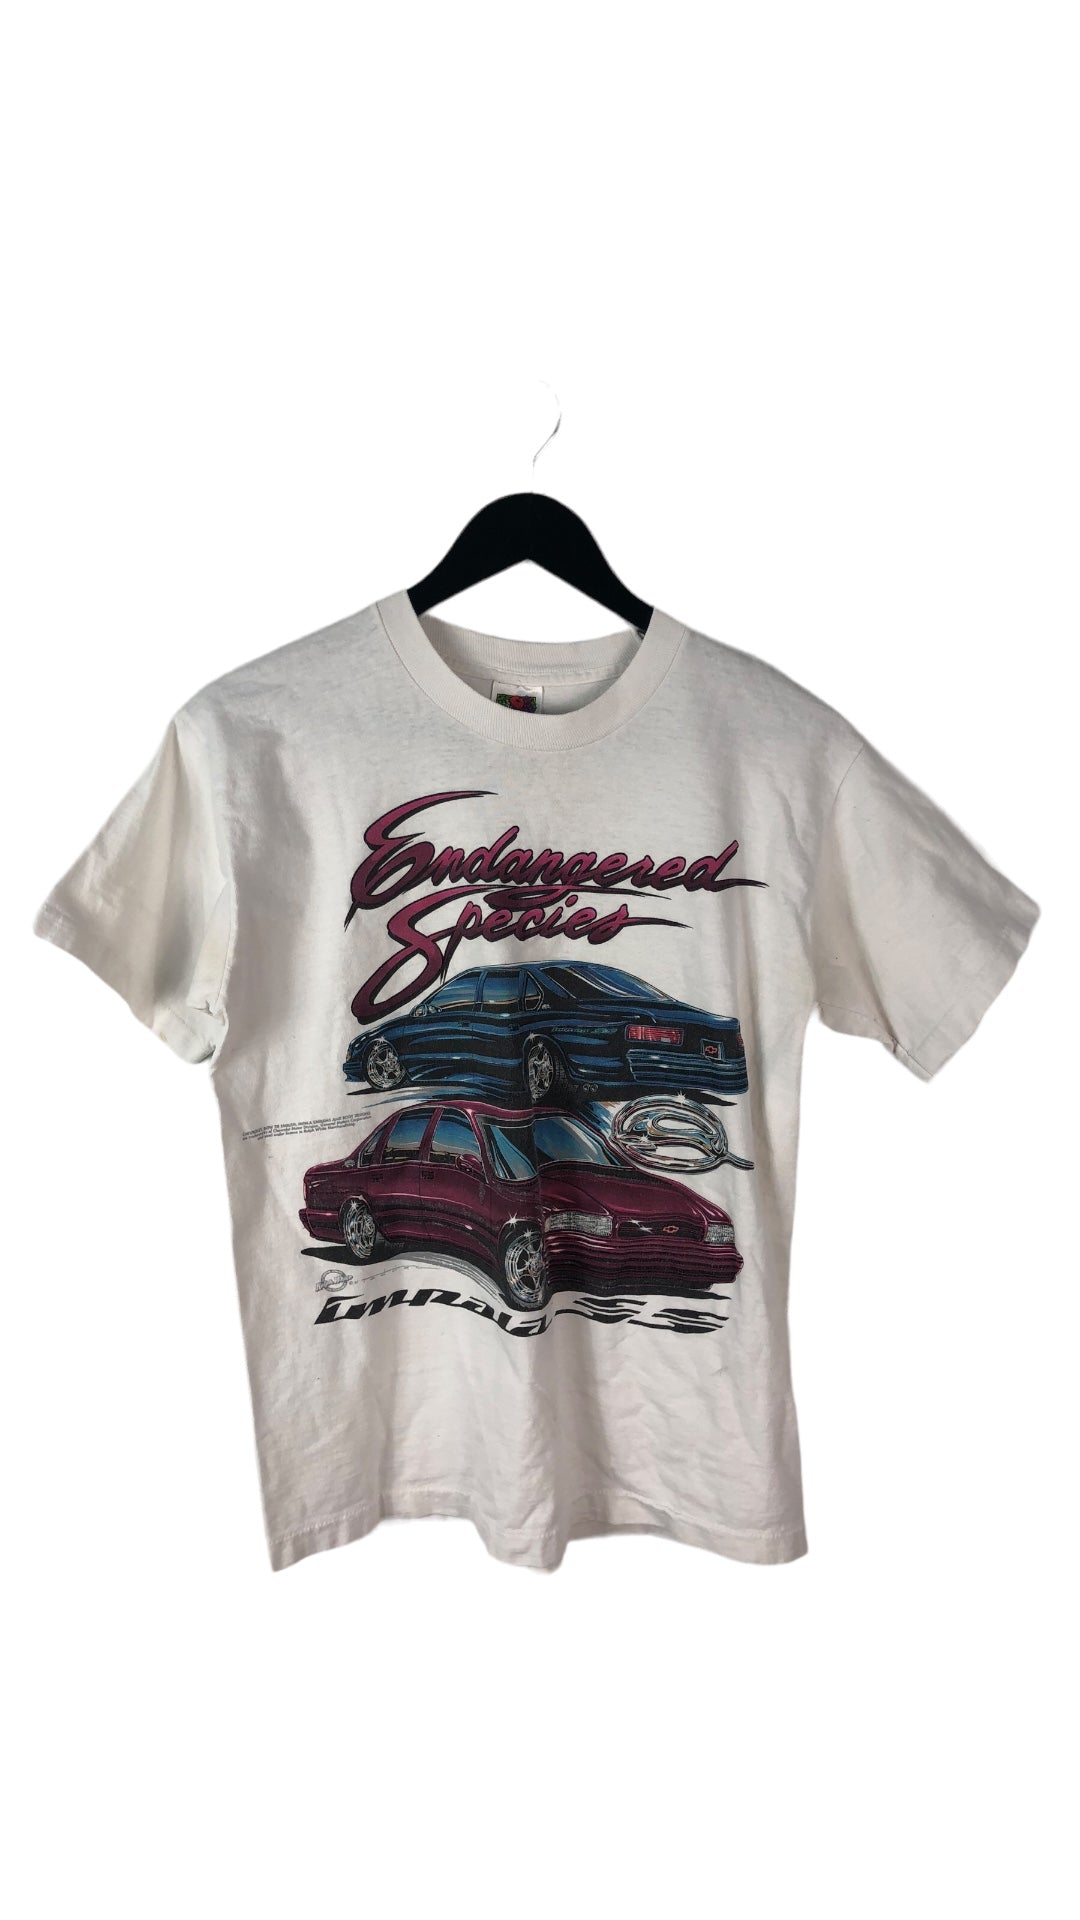 VTG "Endangered Species" '97 Impala SS Tee Sz S